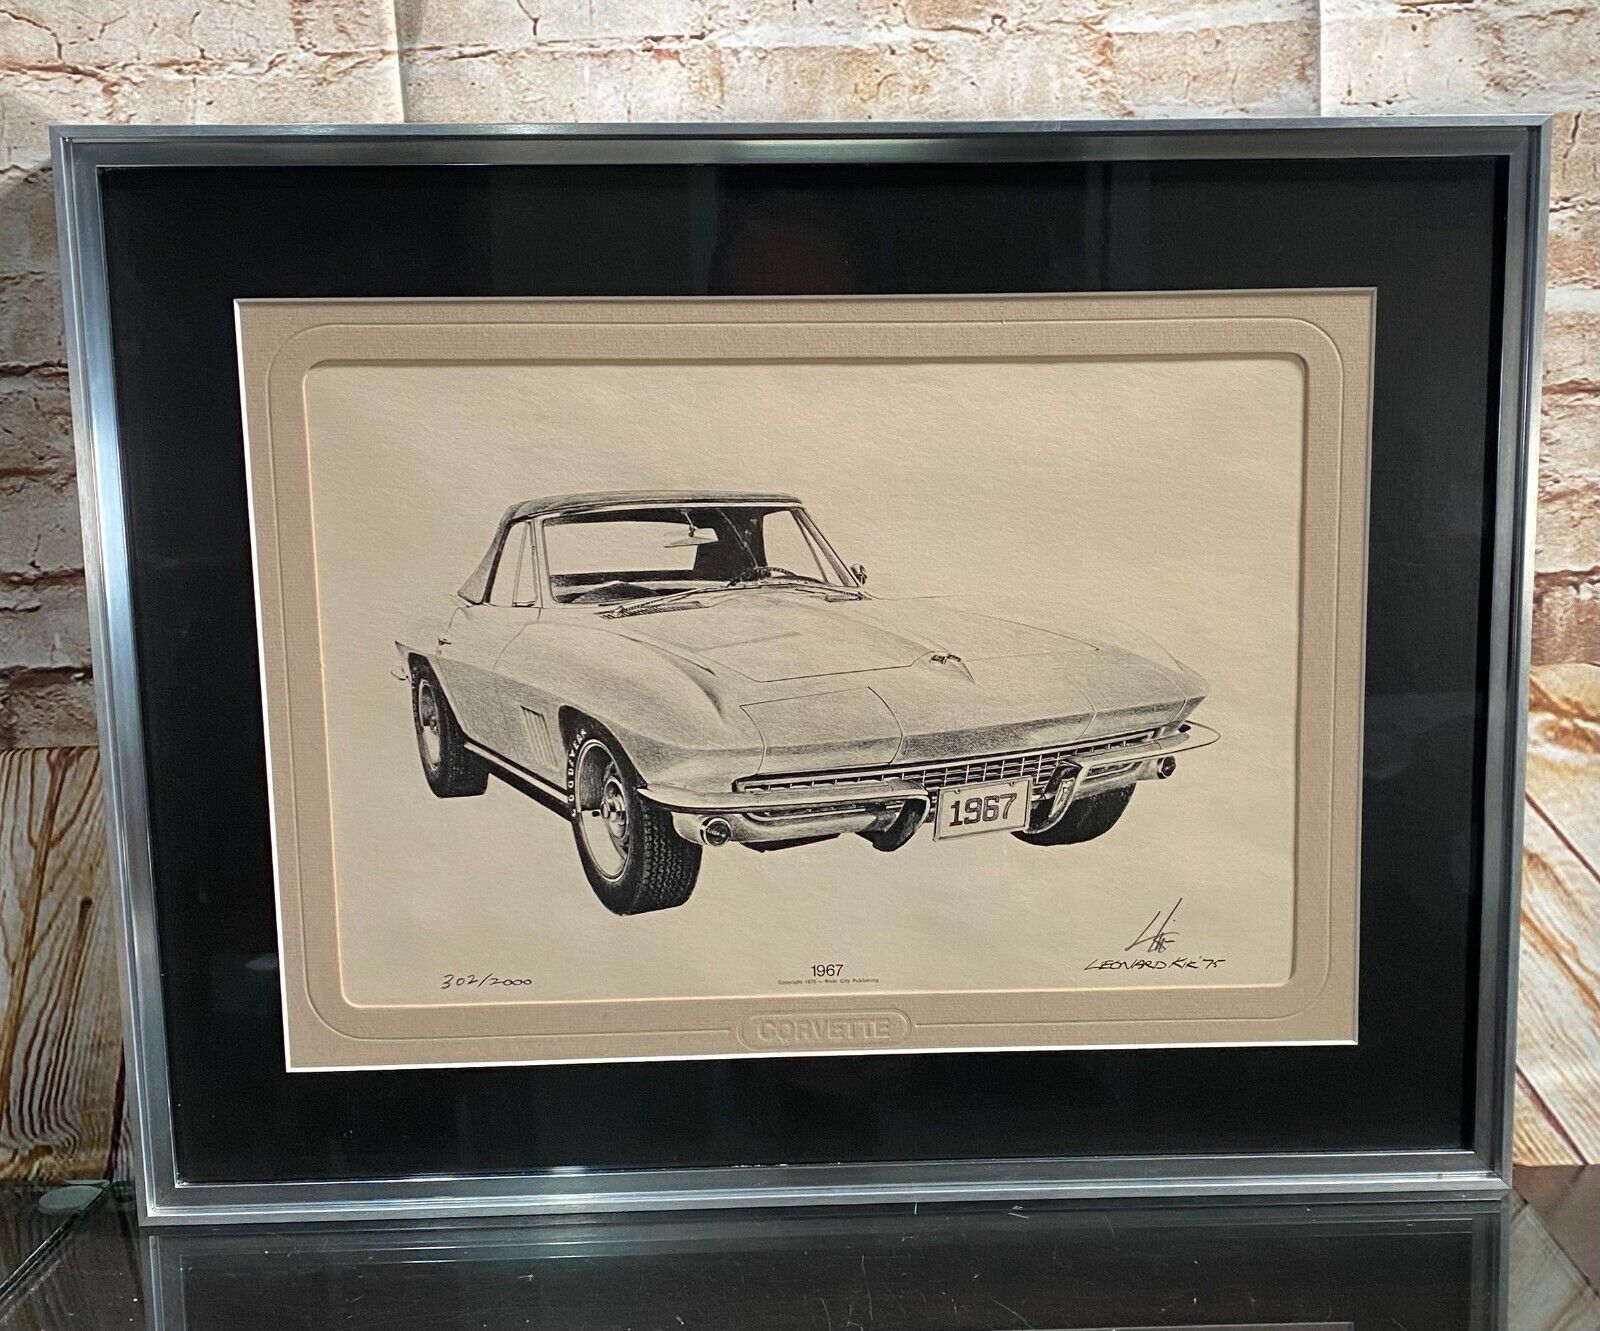 1967 Chevy Corvette Leonard Kik Lithograph Signed Print Framed Art 1975